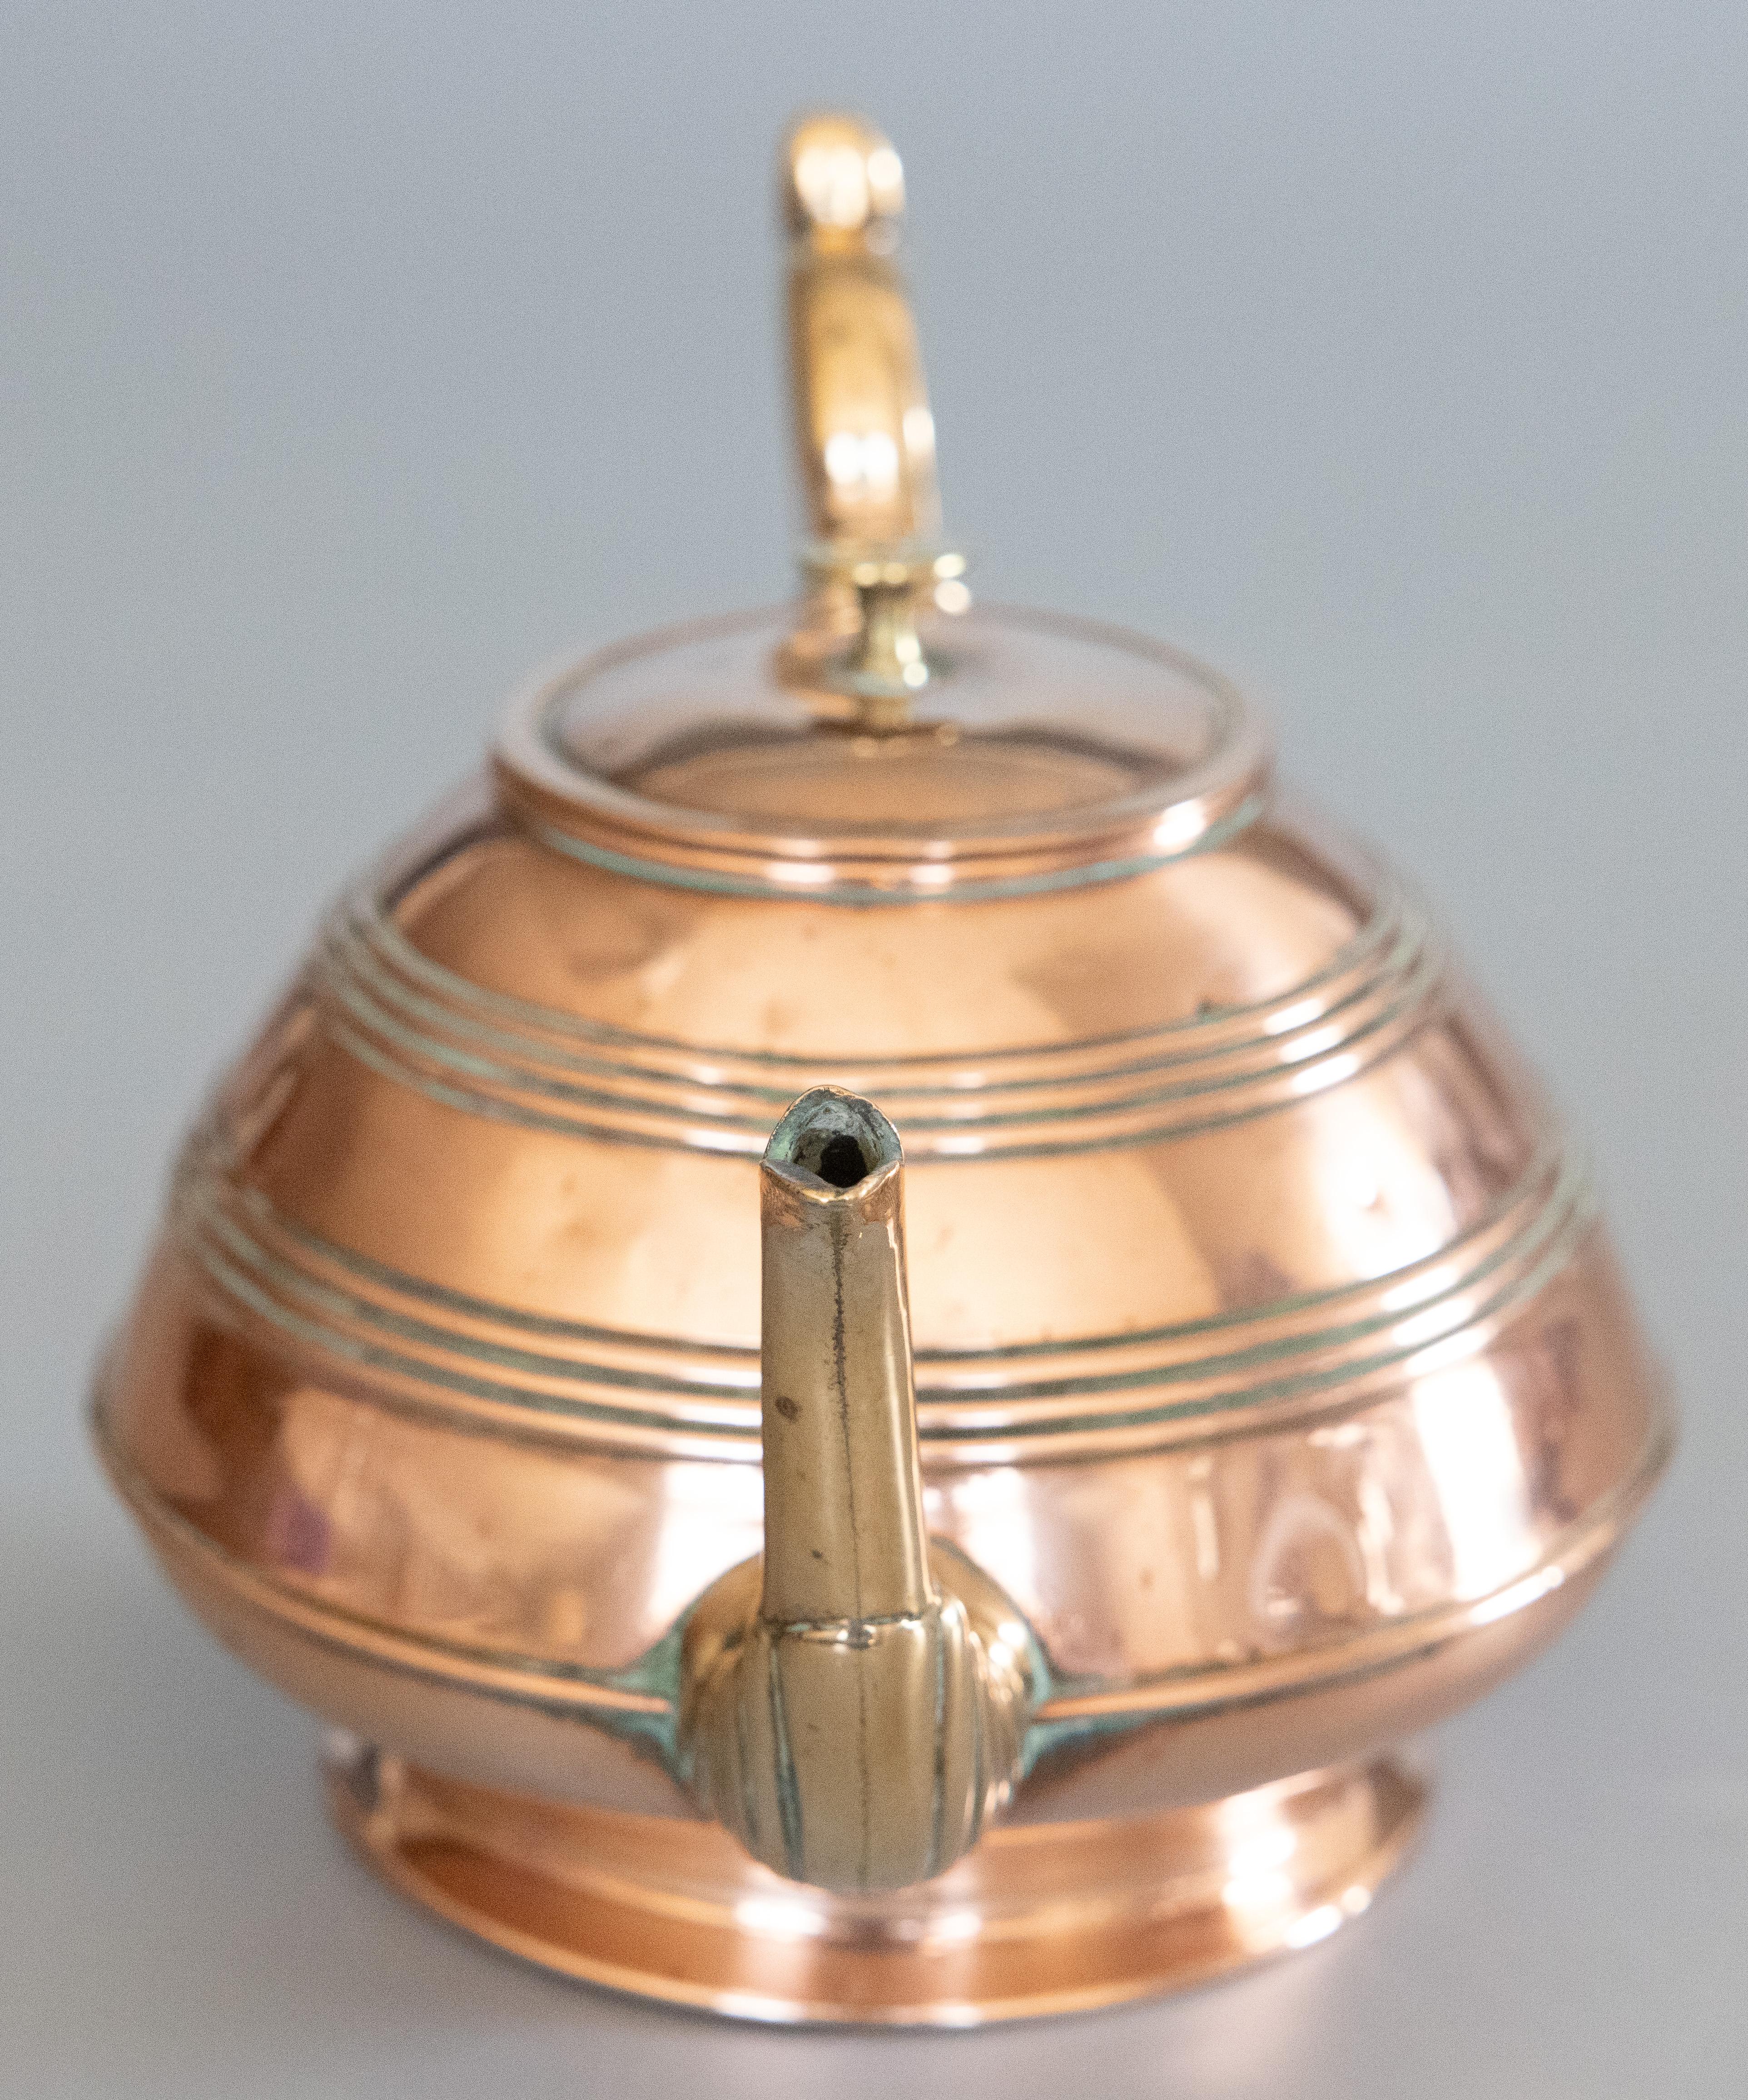 19th Century Art Nouveau English Copper & Brass Teapot Kettle For Sale 1